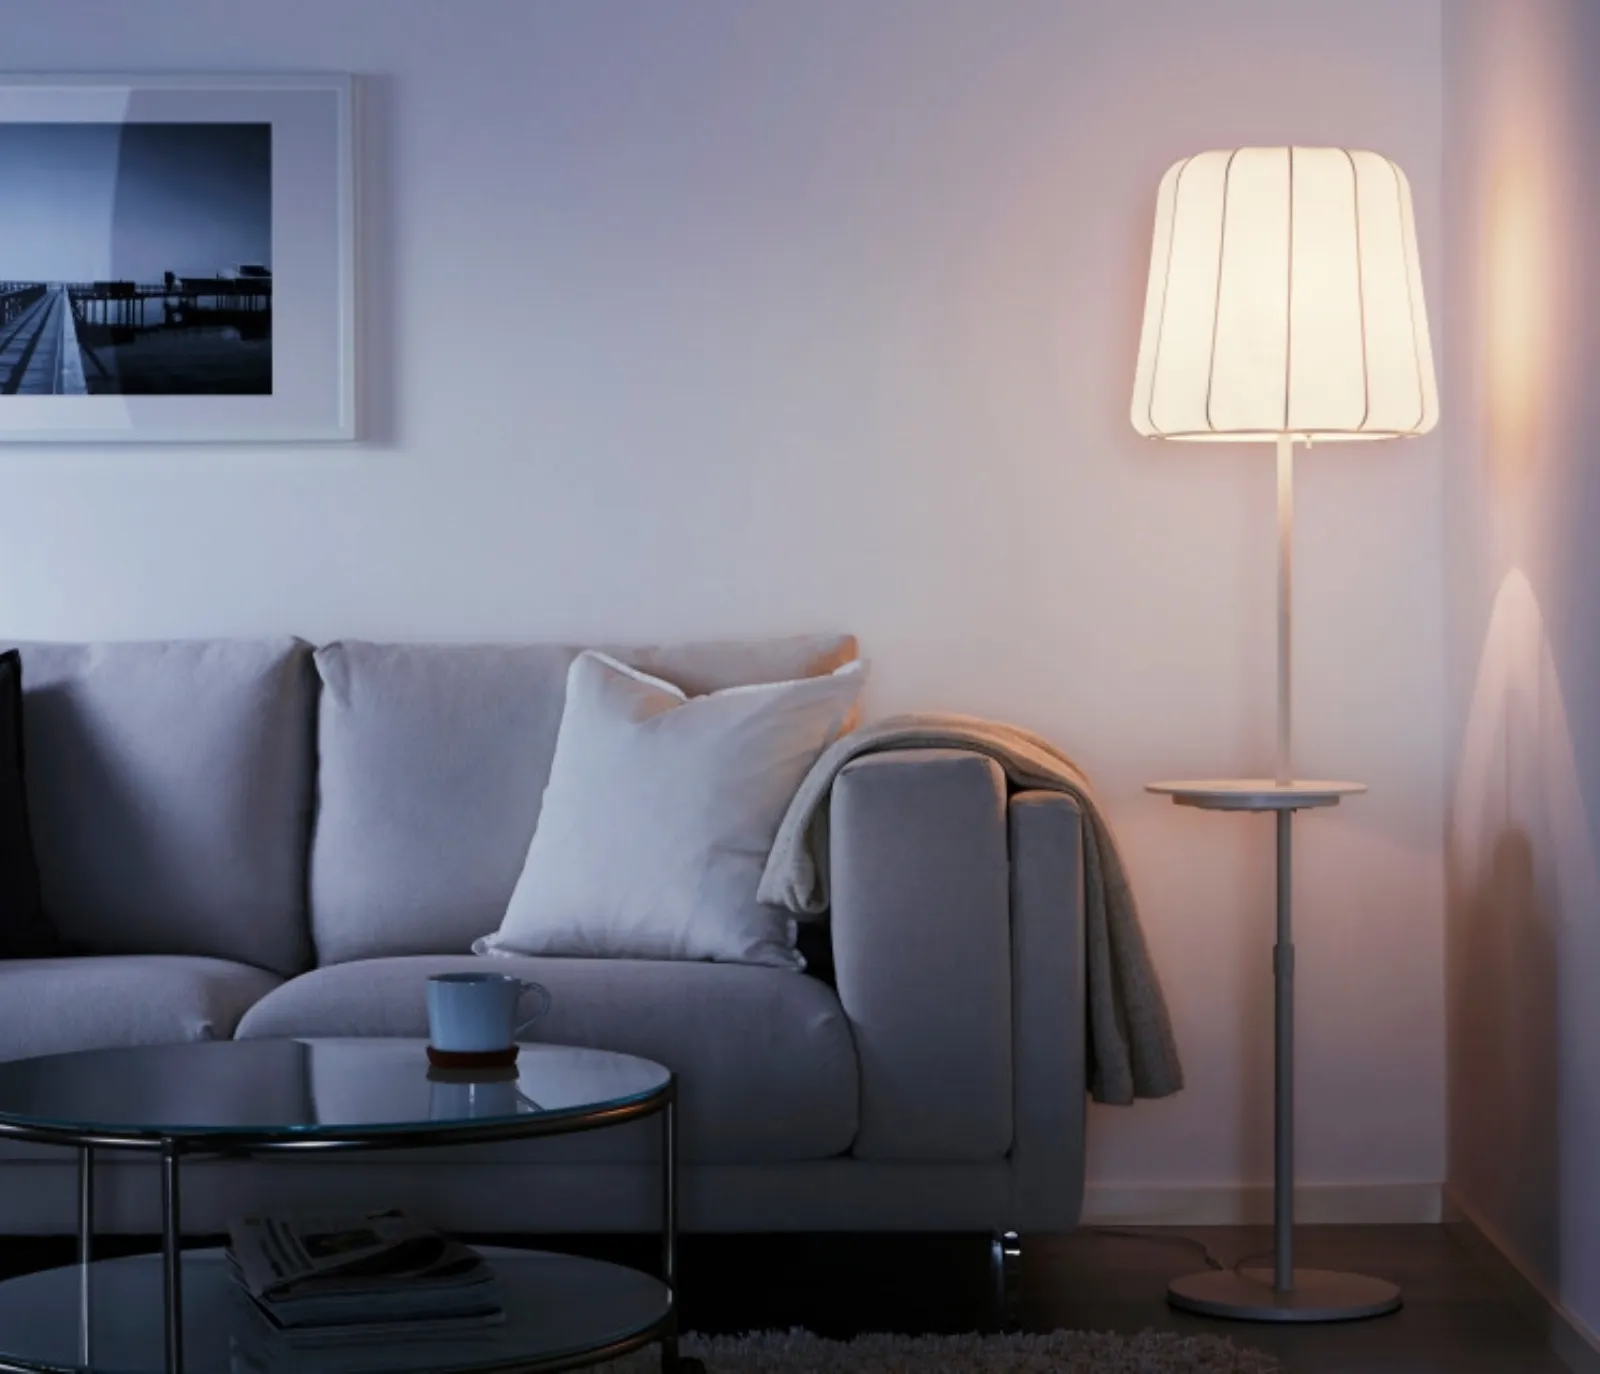 Lampade da terra Ikea, una questione di estetica e praticità